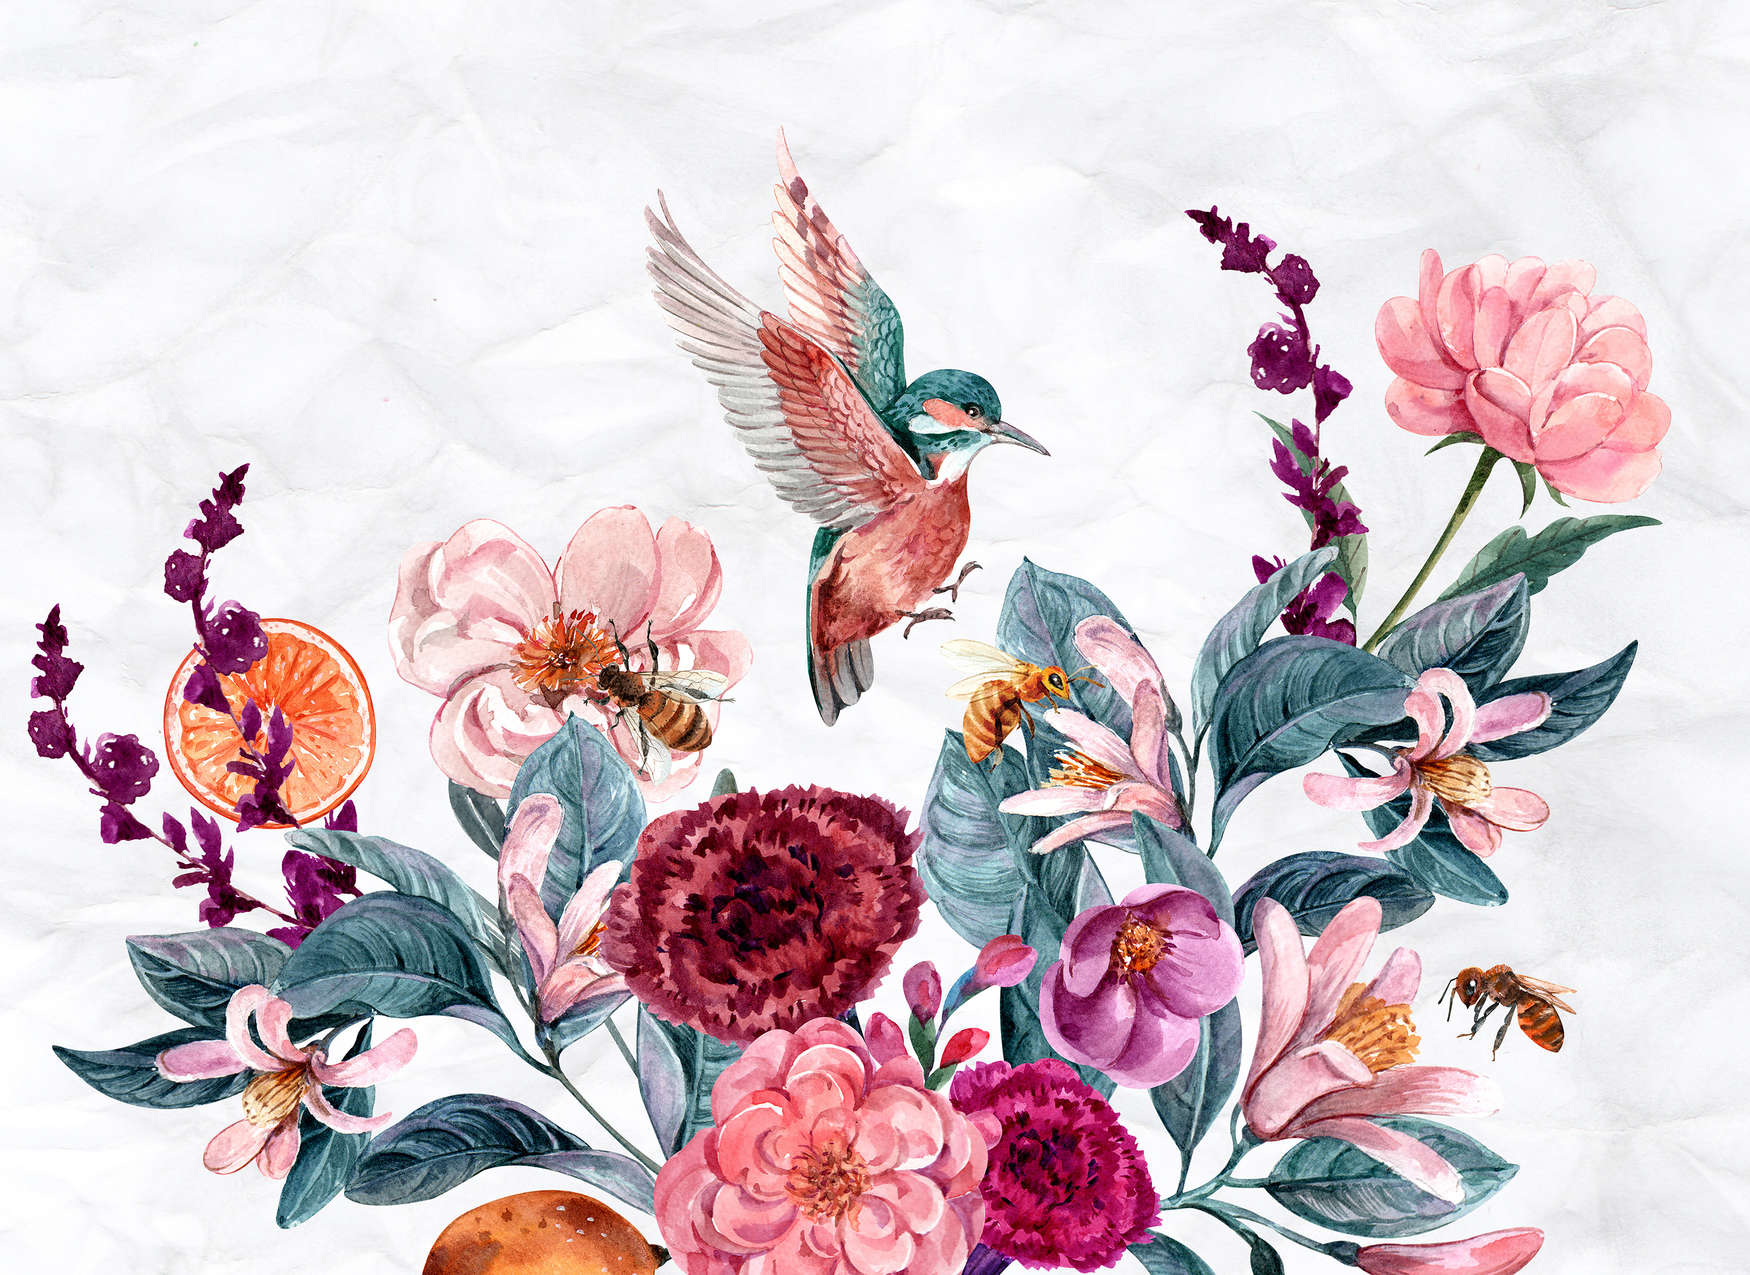             Fototapete Blumen & Vögel auf 3D Hintergrund – Rosa, Grün, Weiß
        